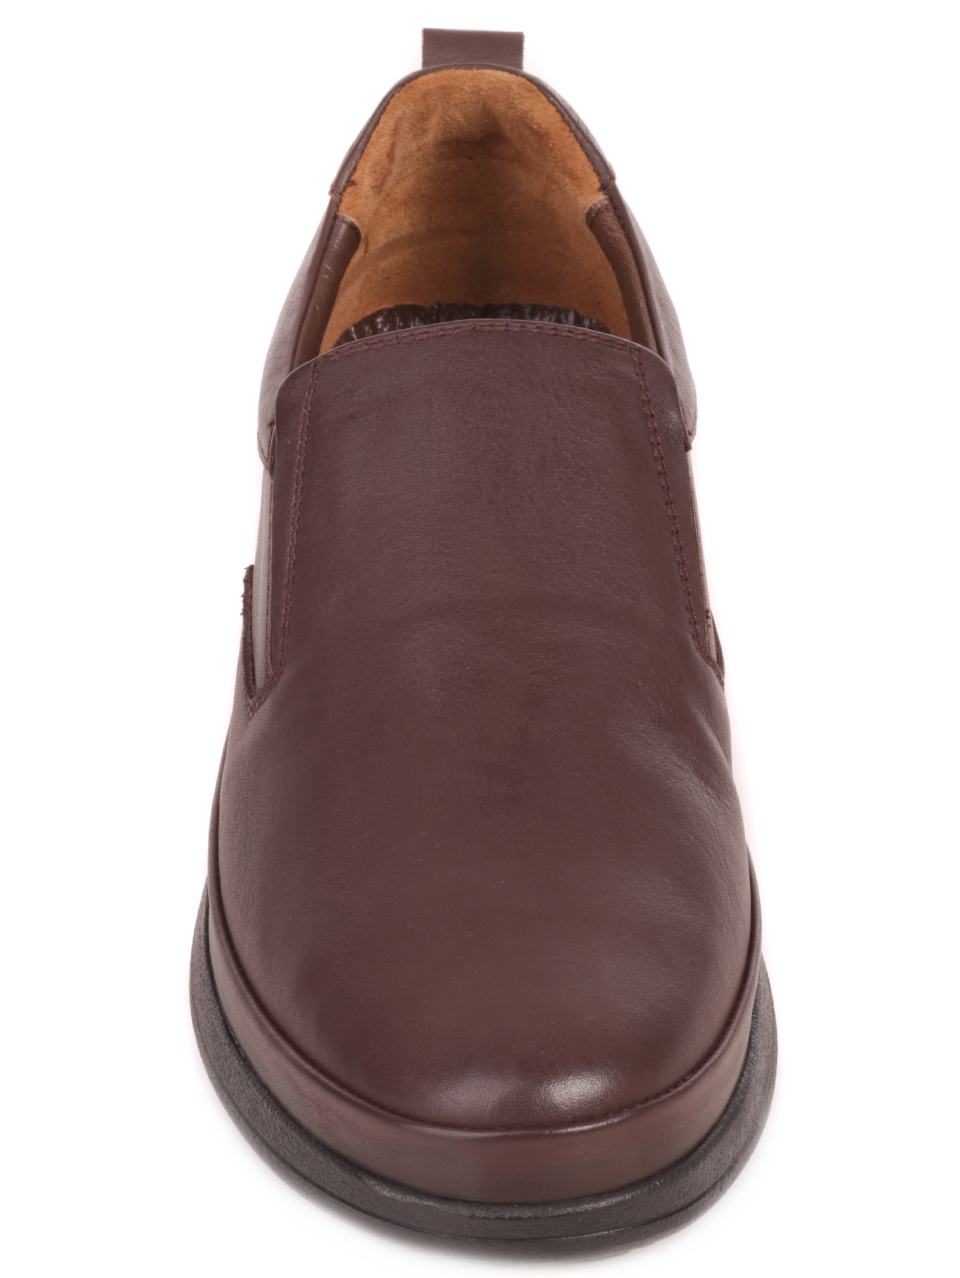 Мъжки обувки от естествена кожа в кафяво 7AT-23746 brown/coffee